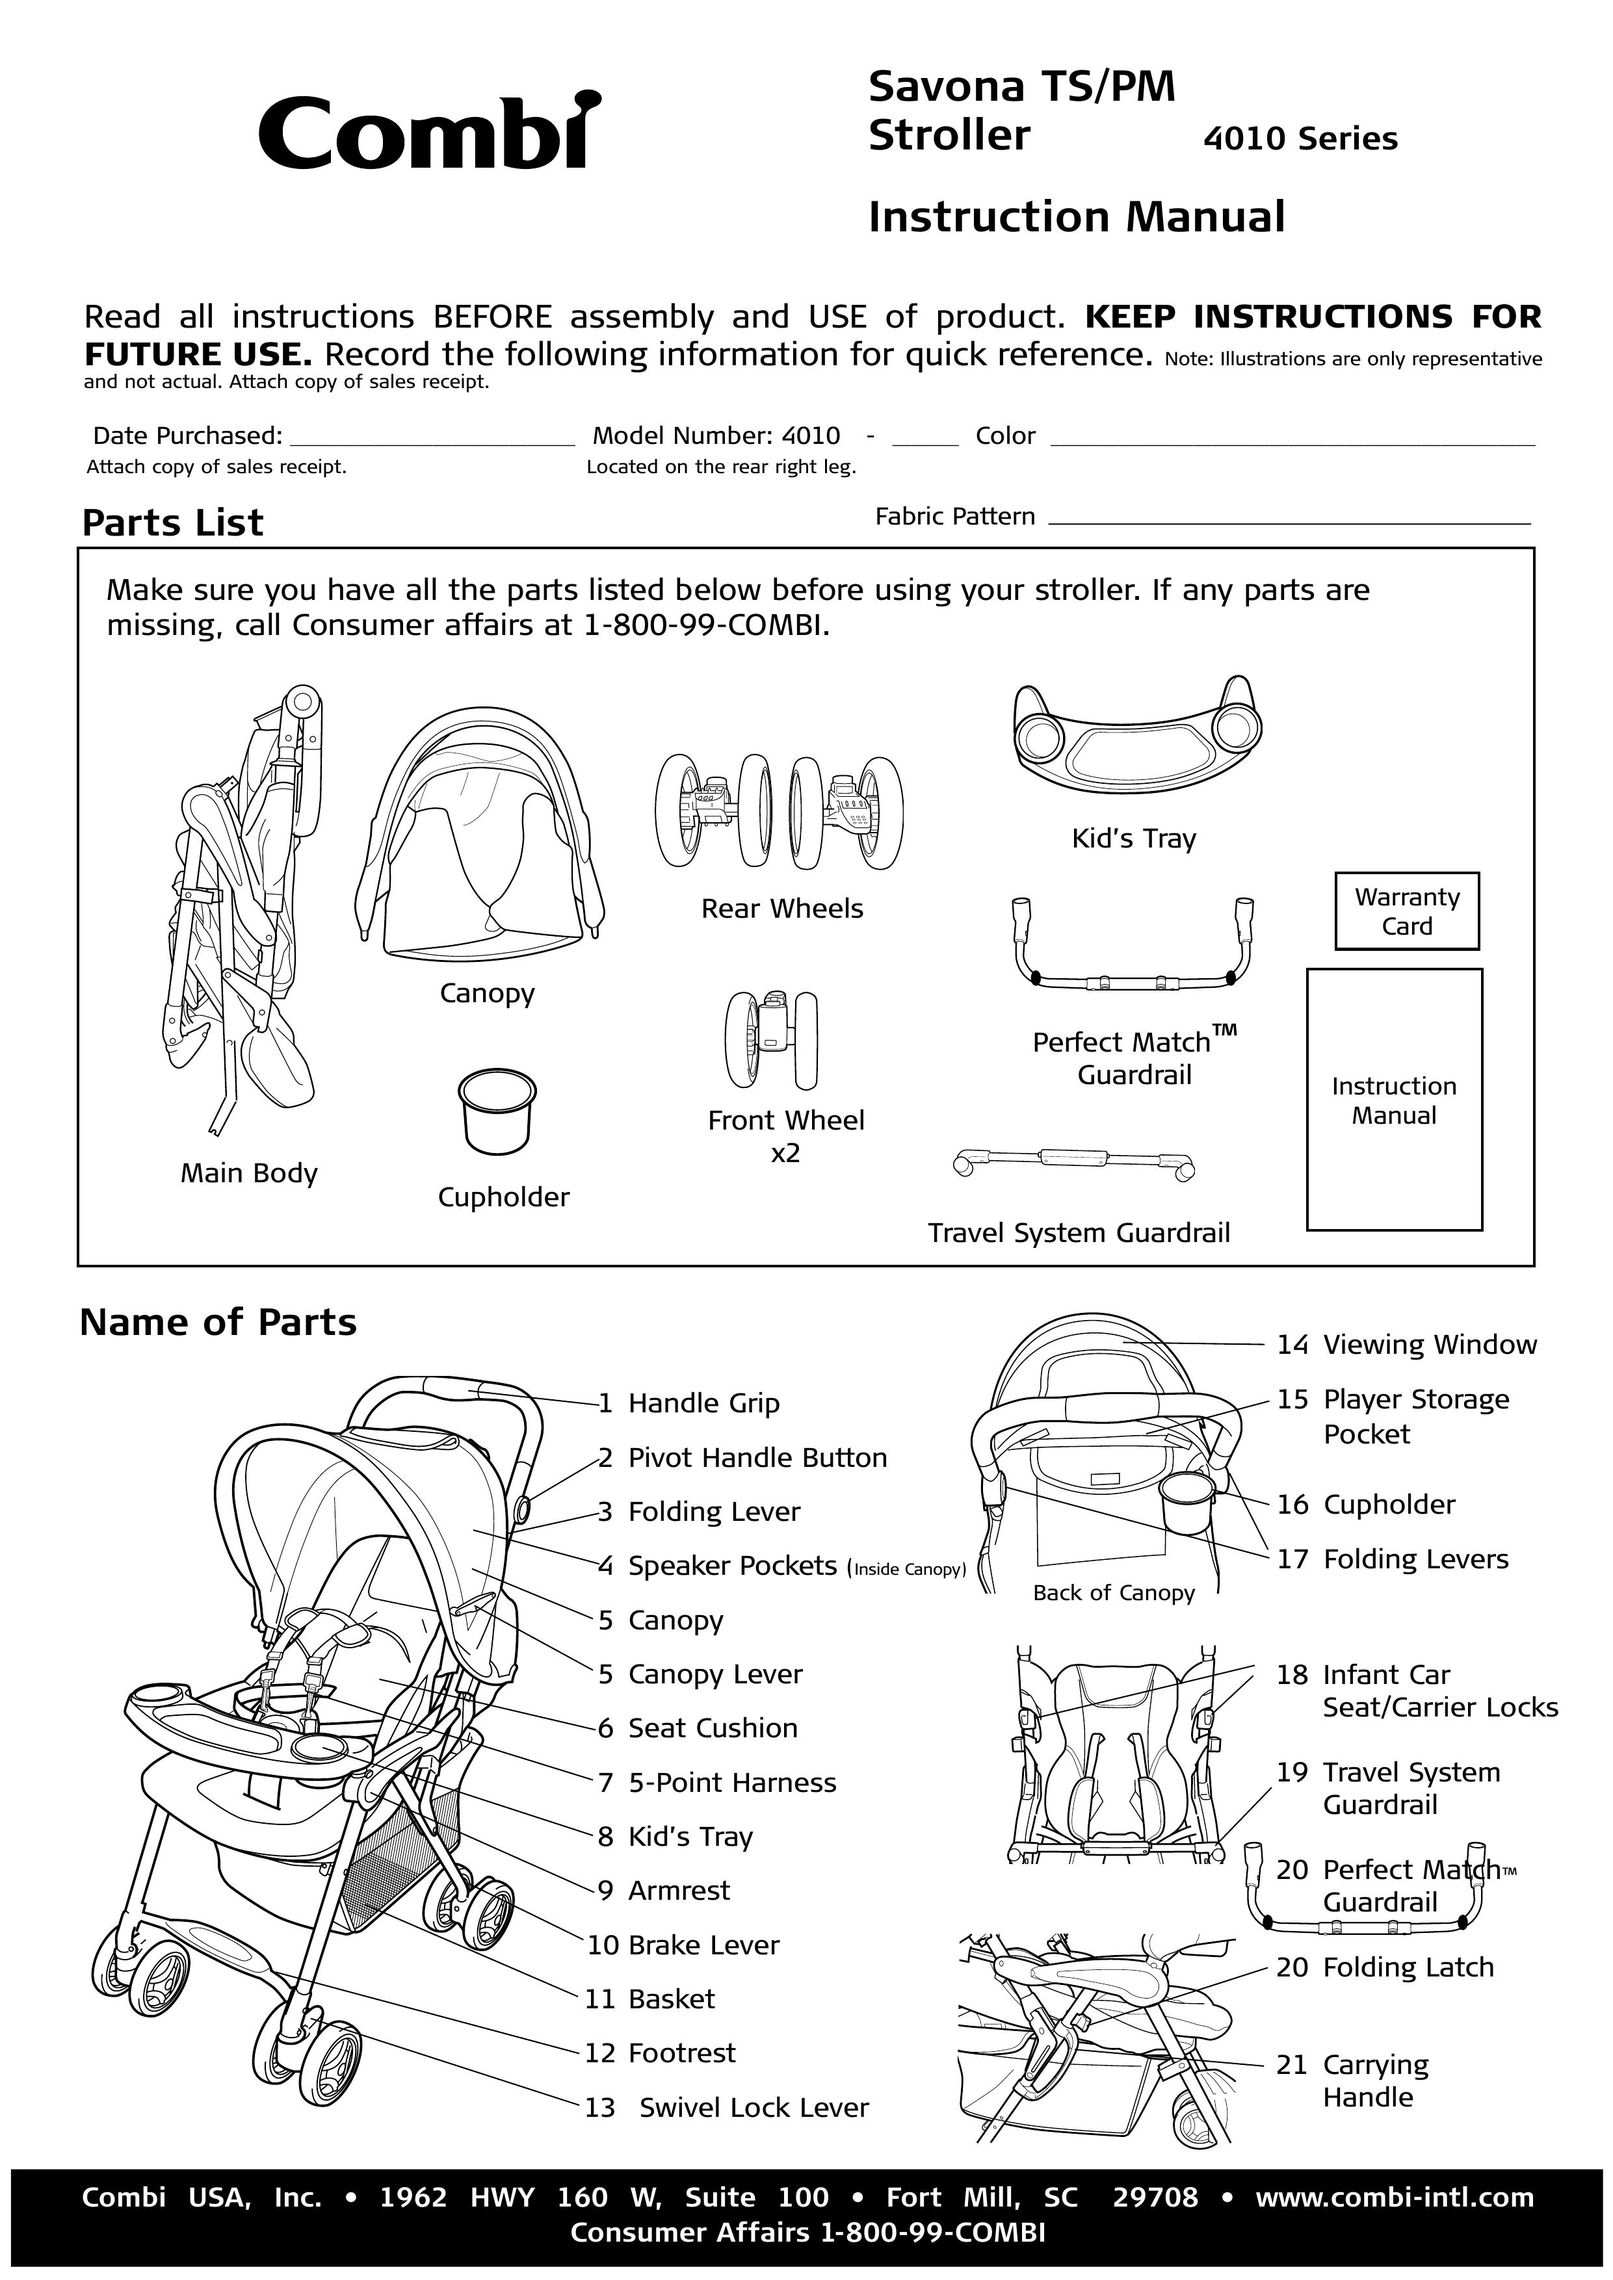 Combi 4010 Stroller User Manual